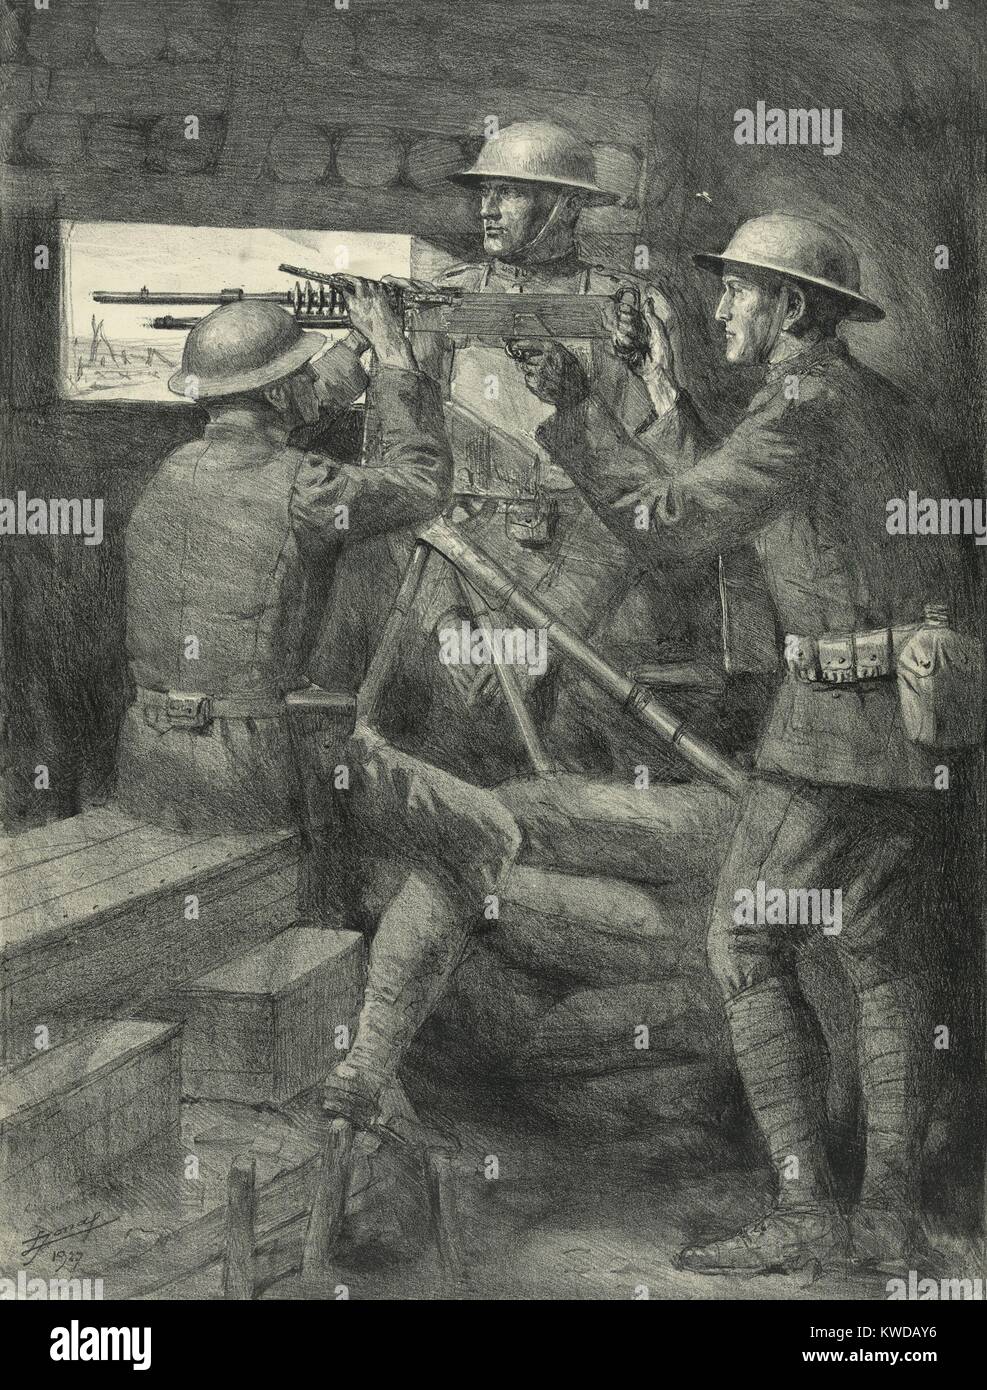 World War 1: Battle of Verdun. A U.S. machine gun emplacement in the Verdun trenches. 1927 lithograph by Lucian Jonas. (BSLOC 2013 1 111) Stock Photo